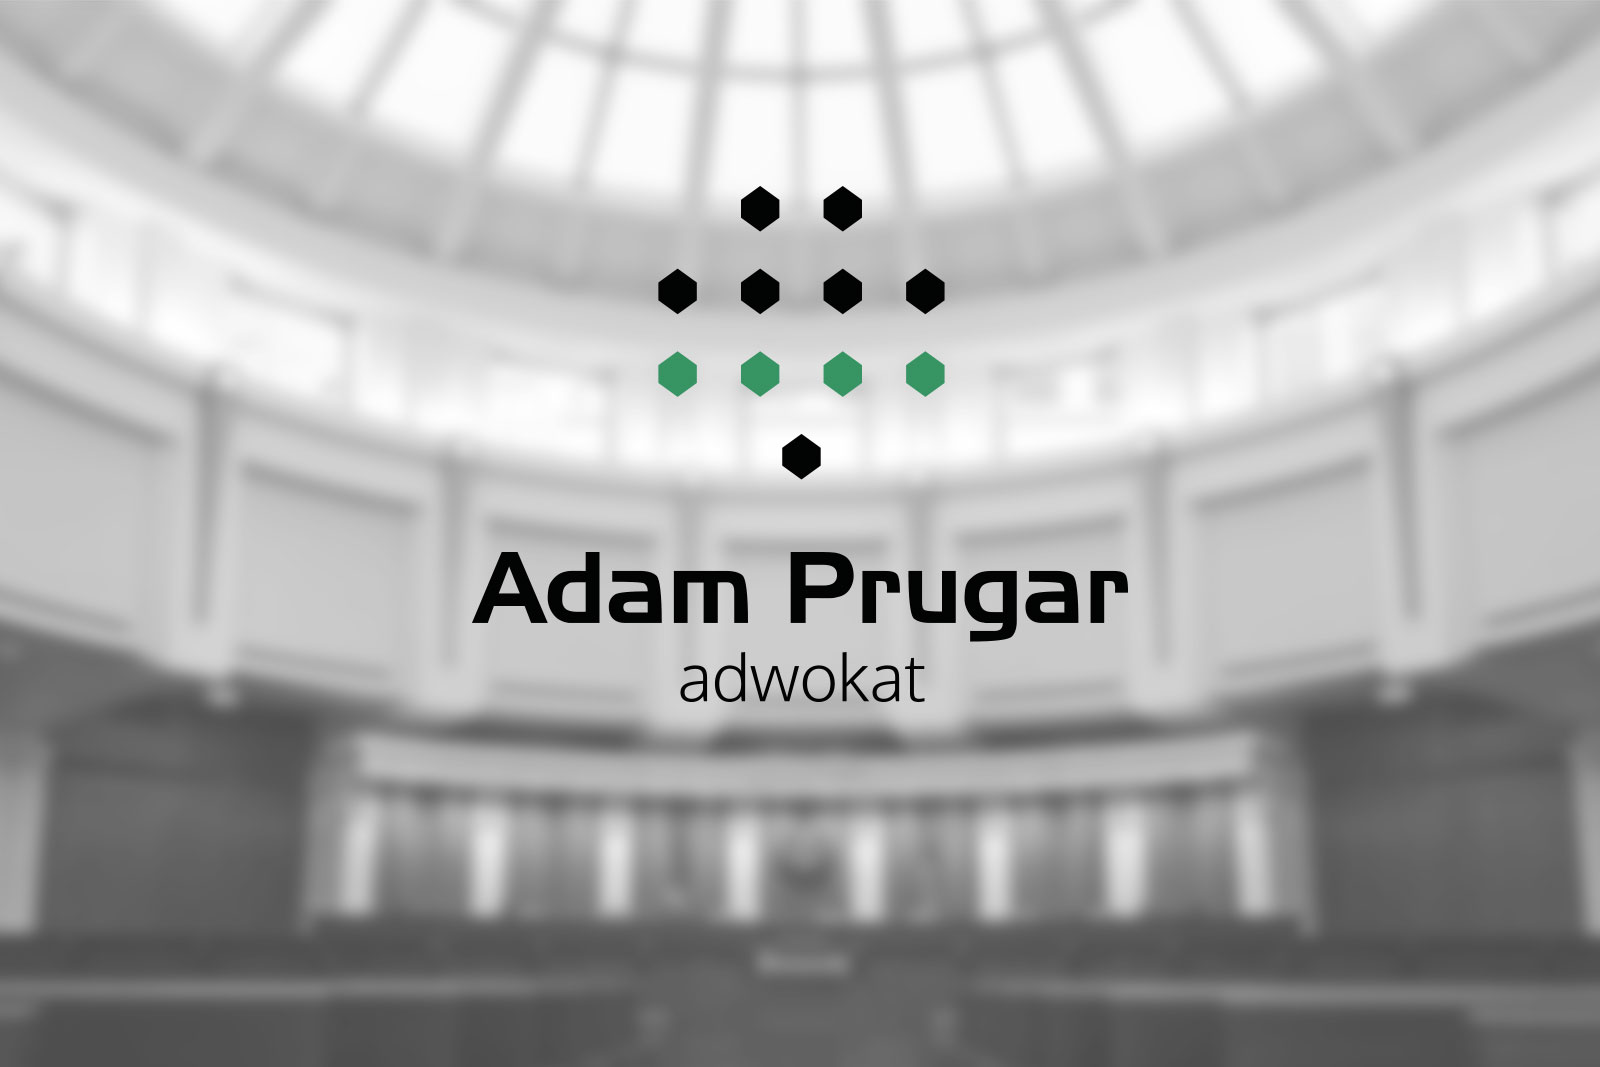 adwokat_adam_prugar_logo_01